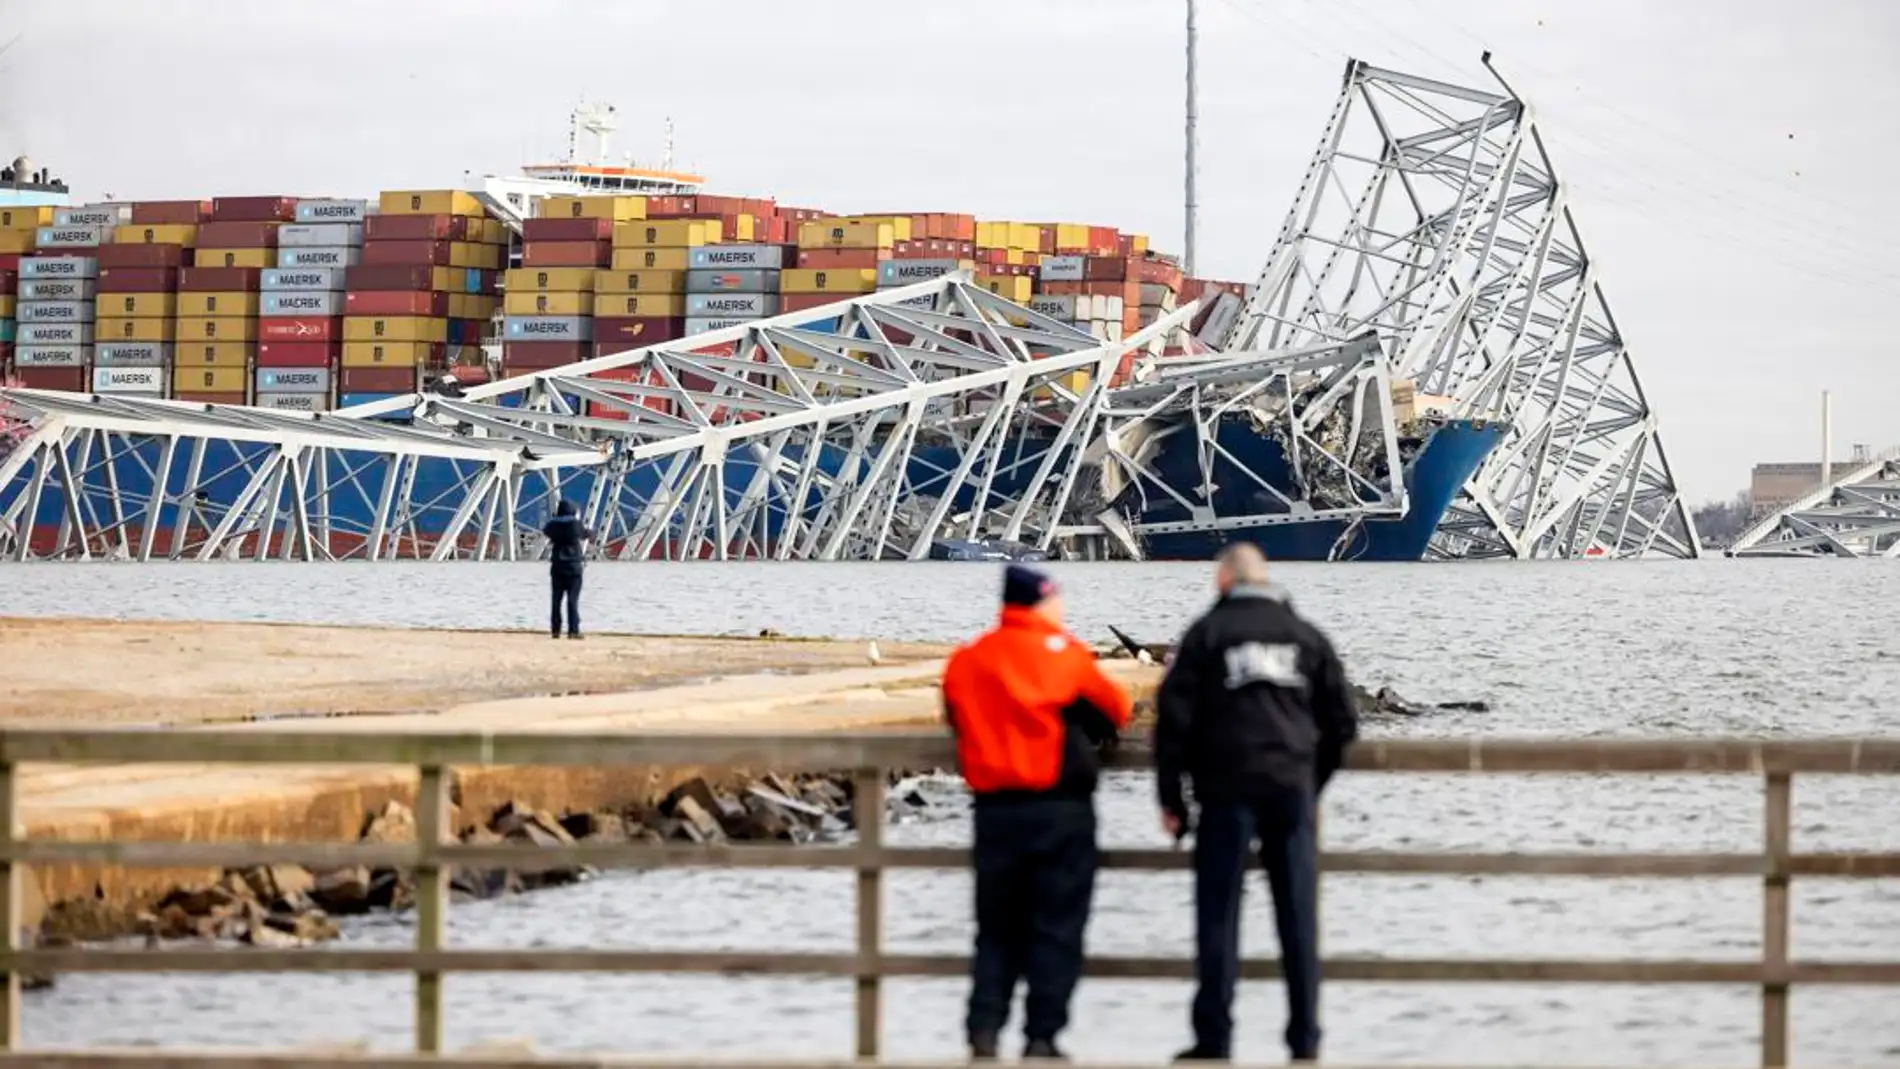  El carguero 'Dali' perdió propulsión antes de colisionar con el puente en Baltimore, según un informe